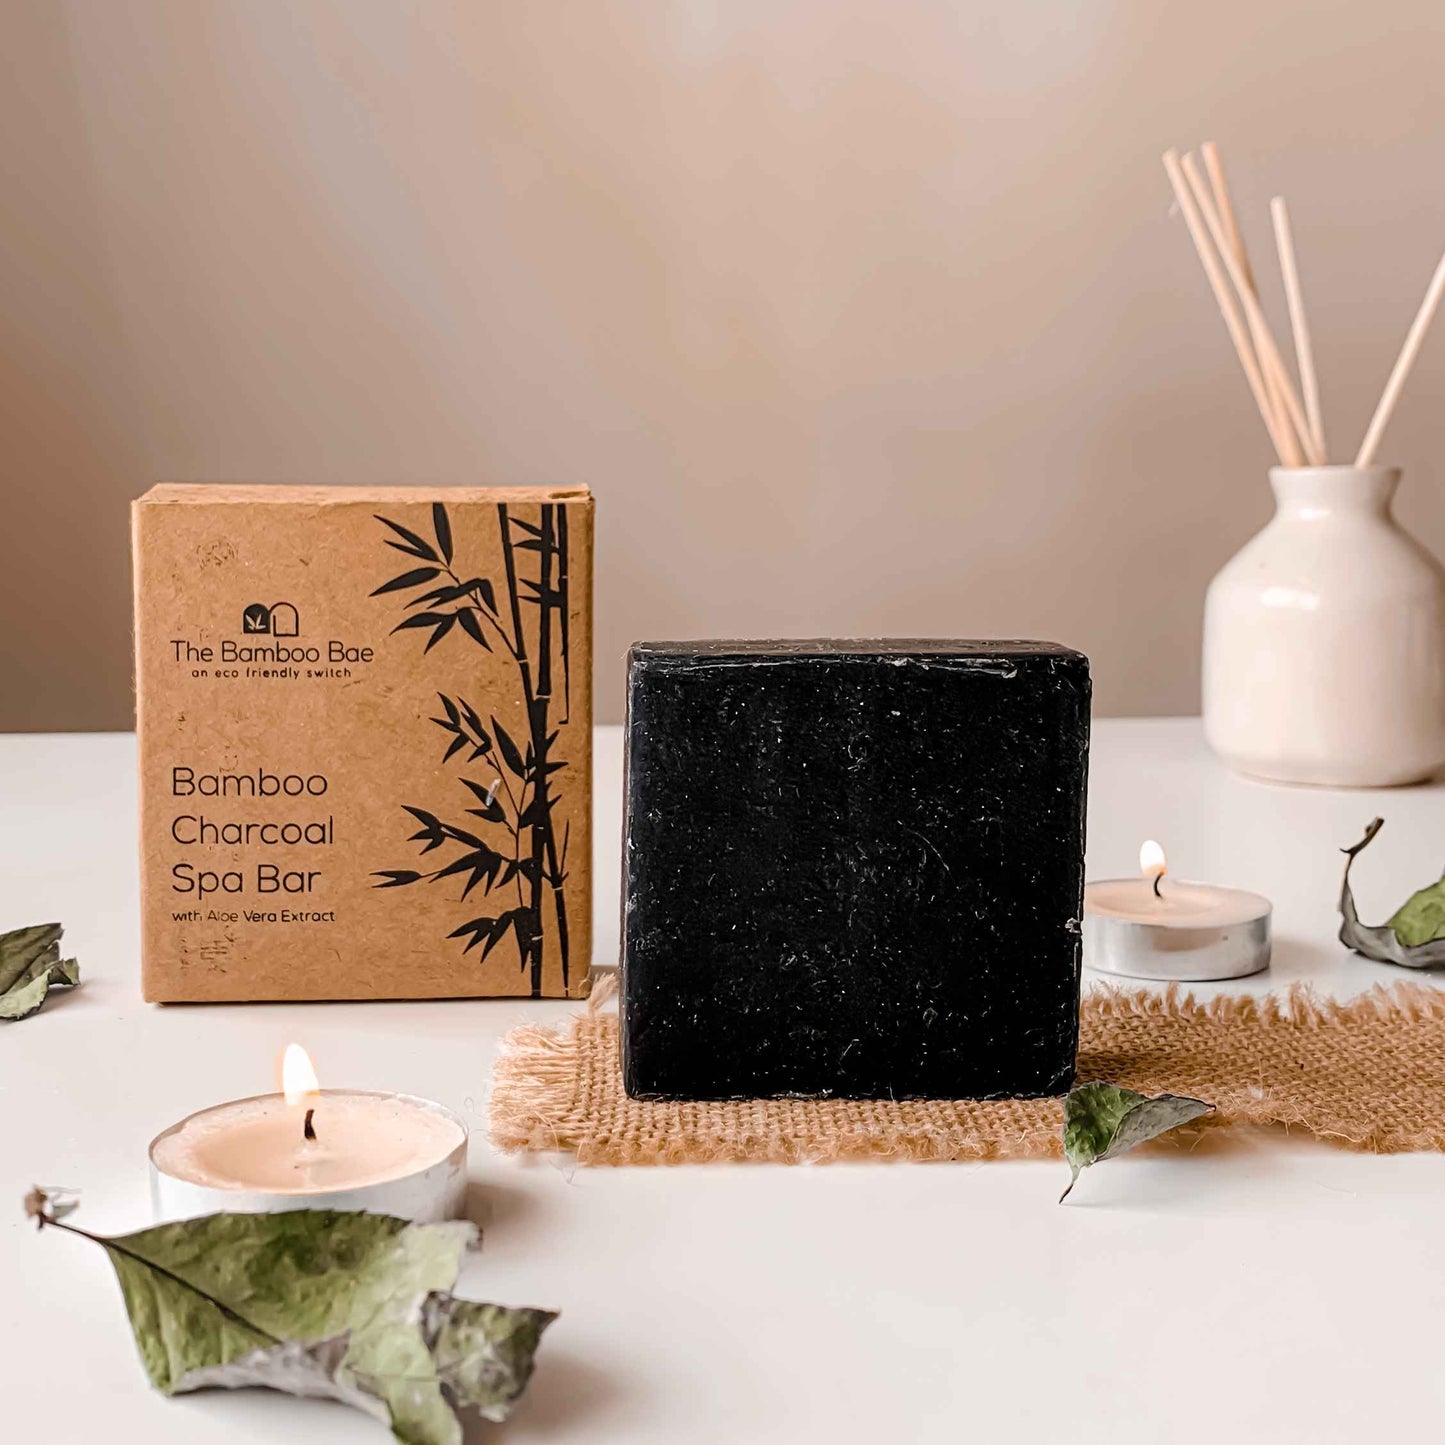 Bamboo Charcoal Soap | Handmade Spa Bar | With Aloe Vera Extract